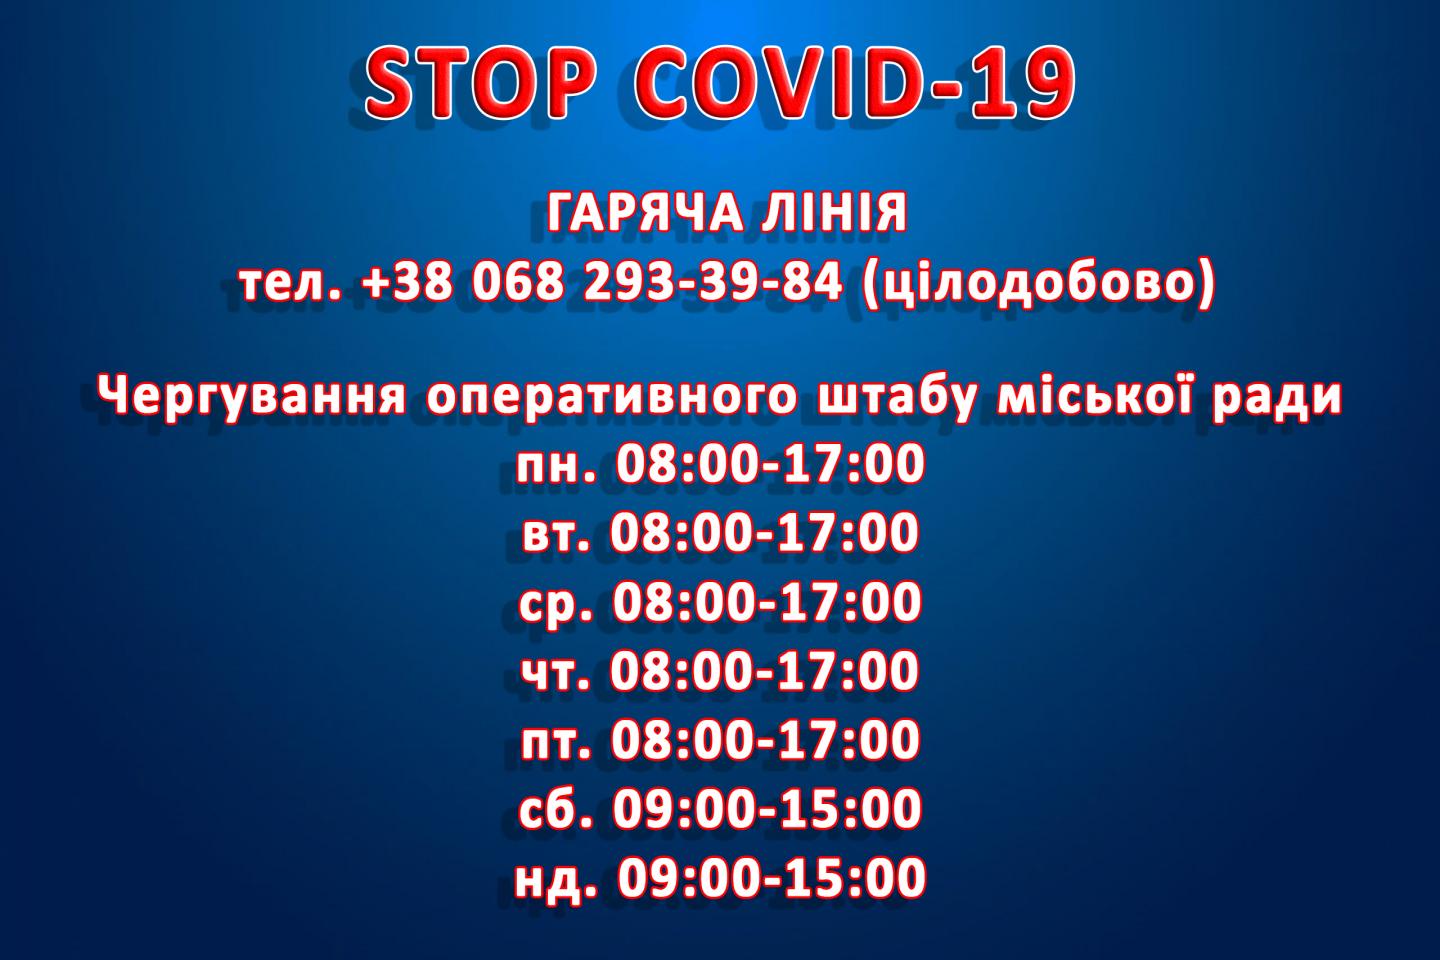 http://dunrada.gov.ua/uploadfile/archive_news/2020/04/07/2020-04-07_4442/images/images-61279.jpg